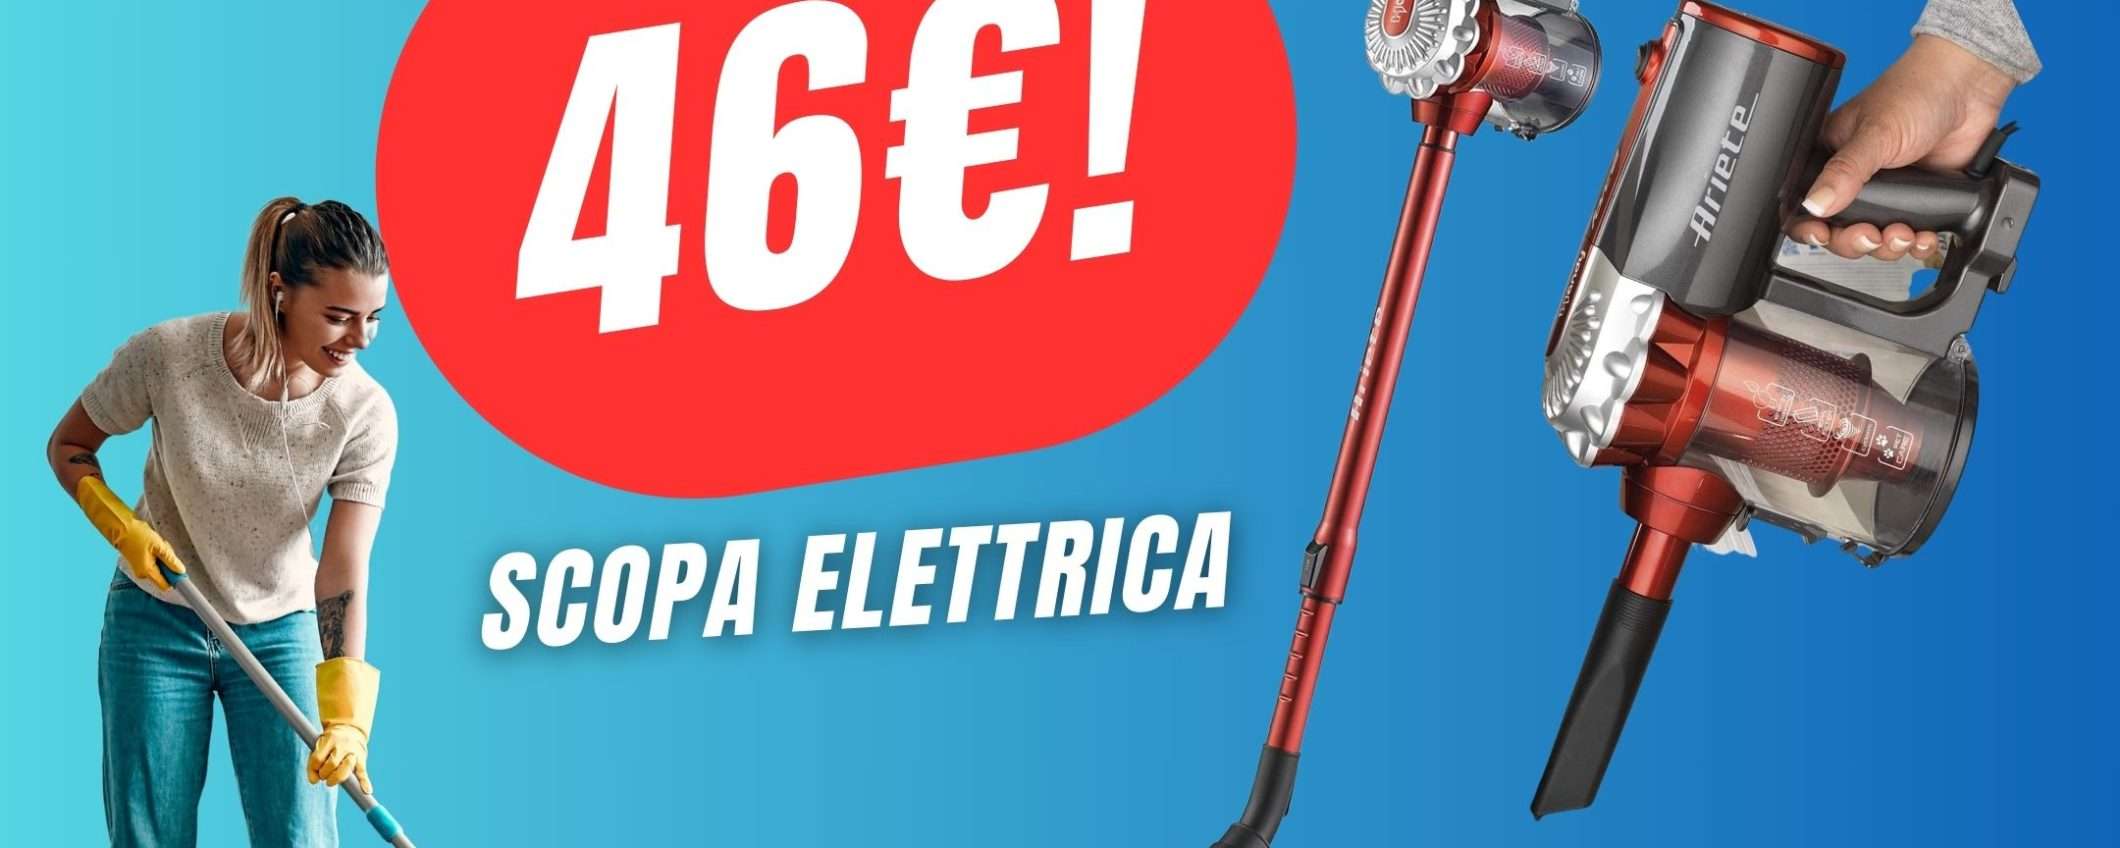 SCONTO PAZZESCO per questa Scopa Elettrica: costa solo 46€!